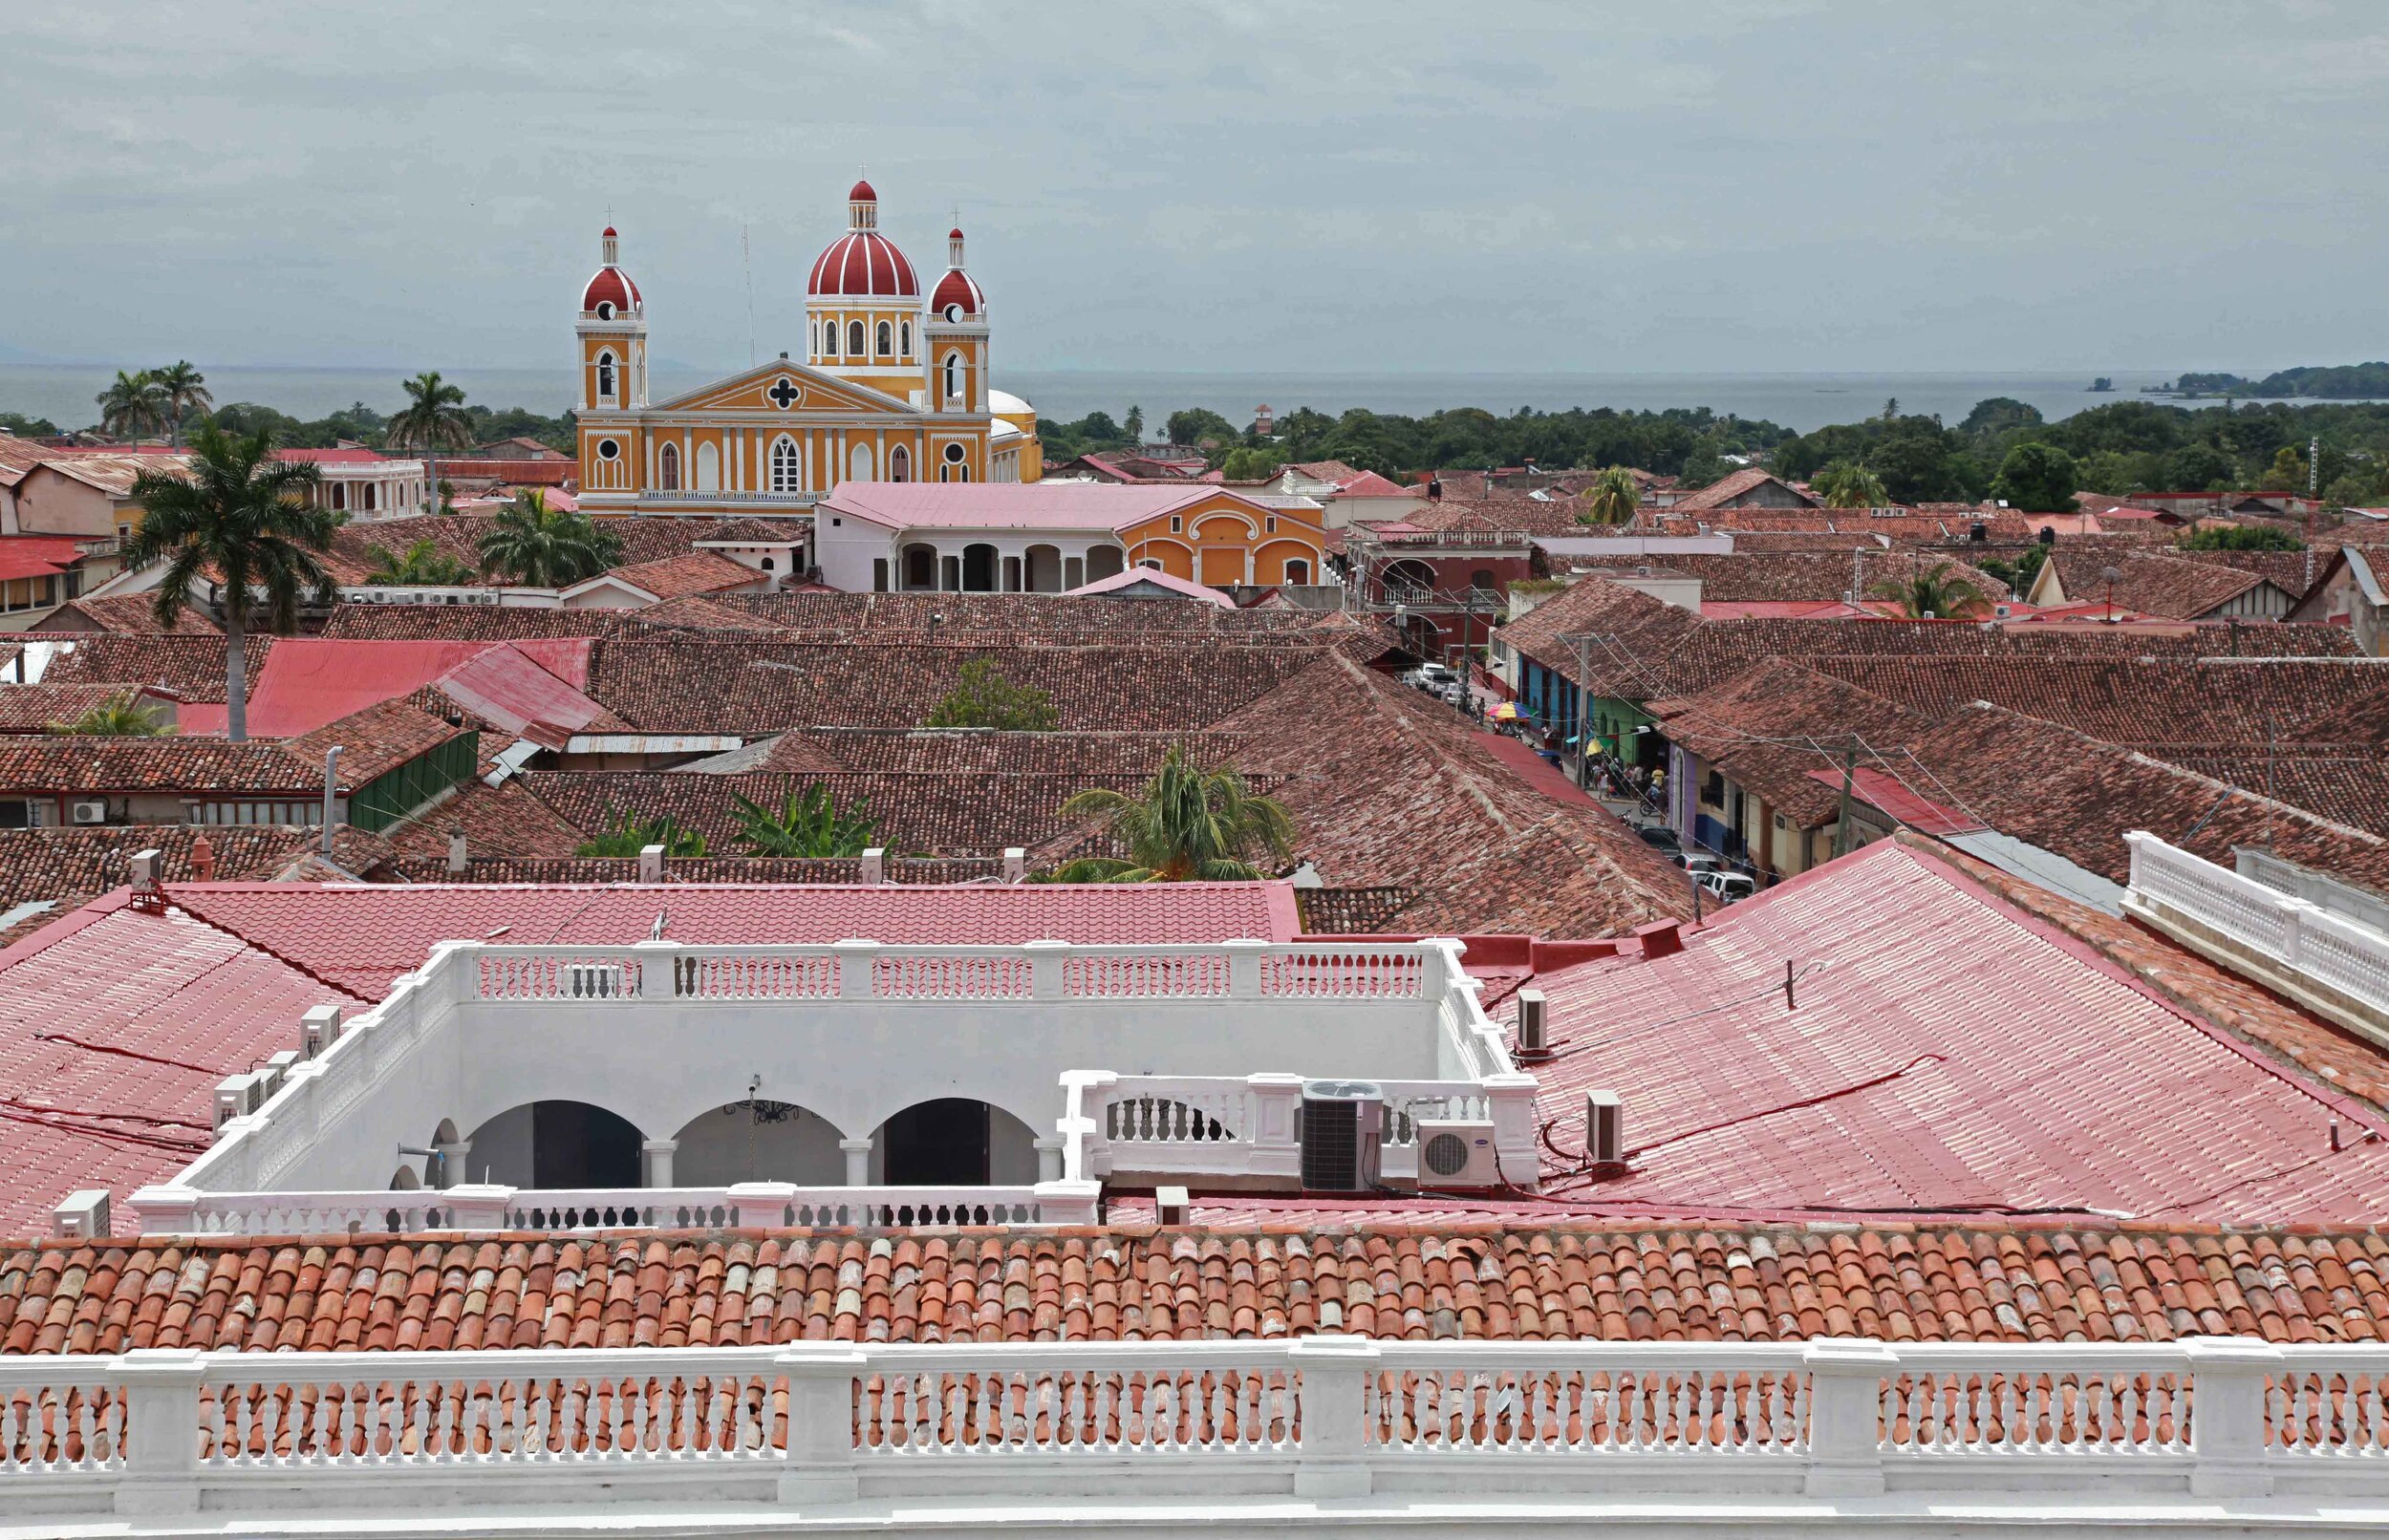  Granada, Nicaragua         